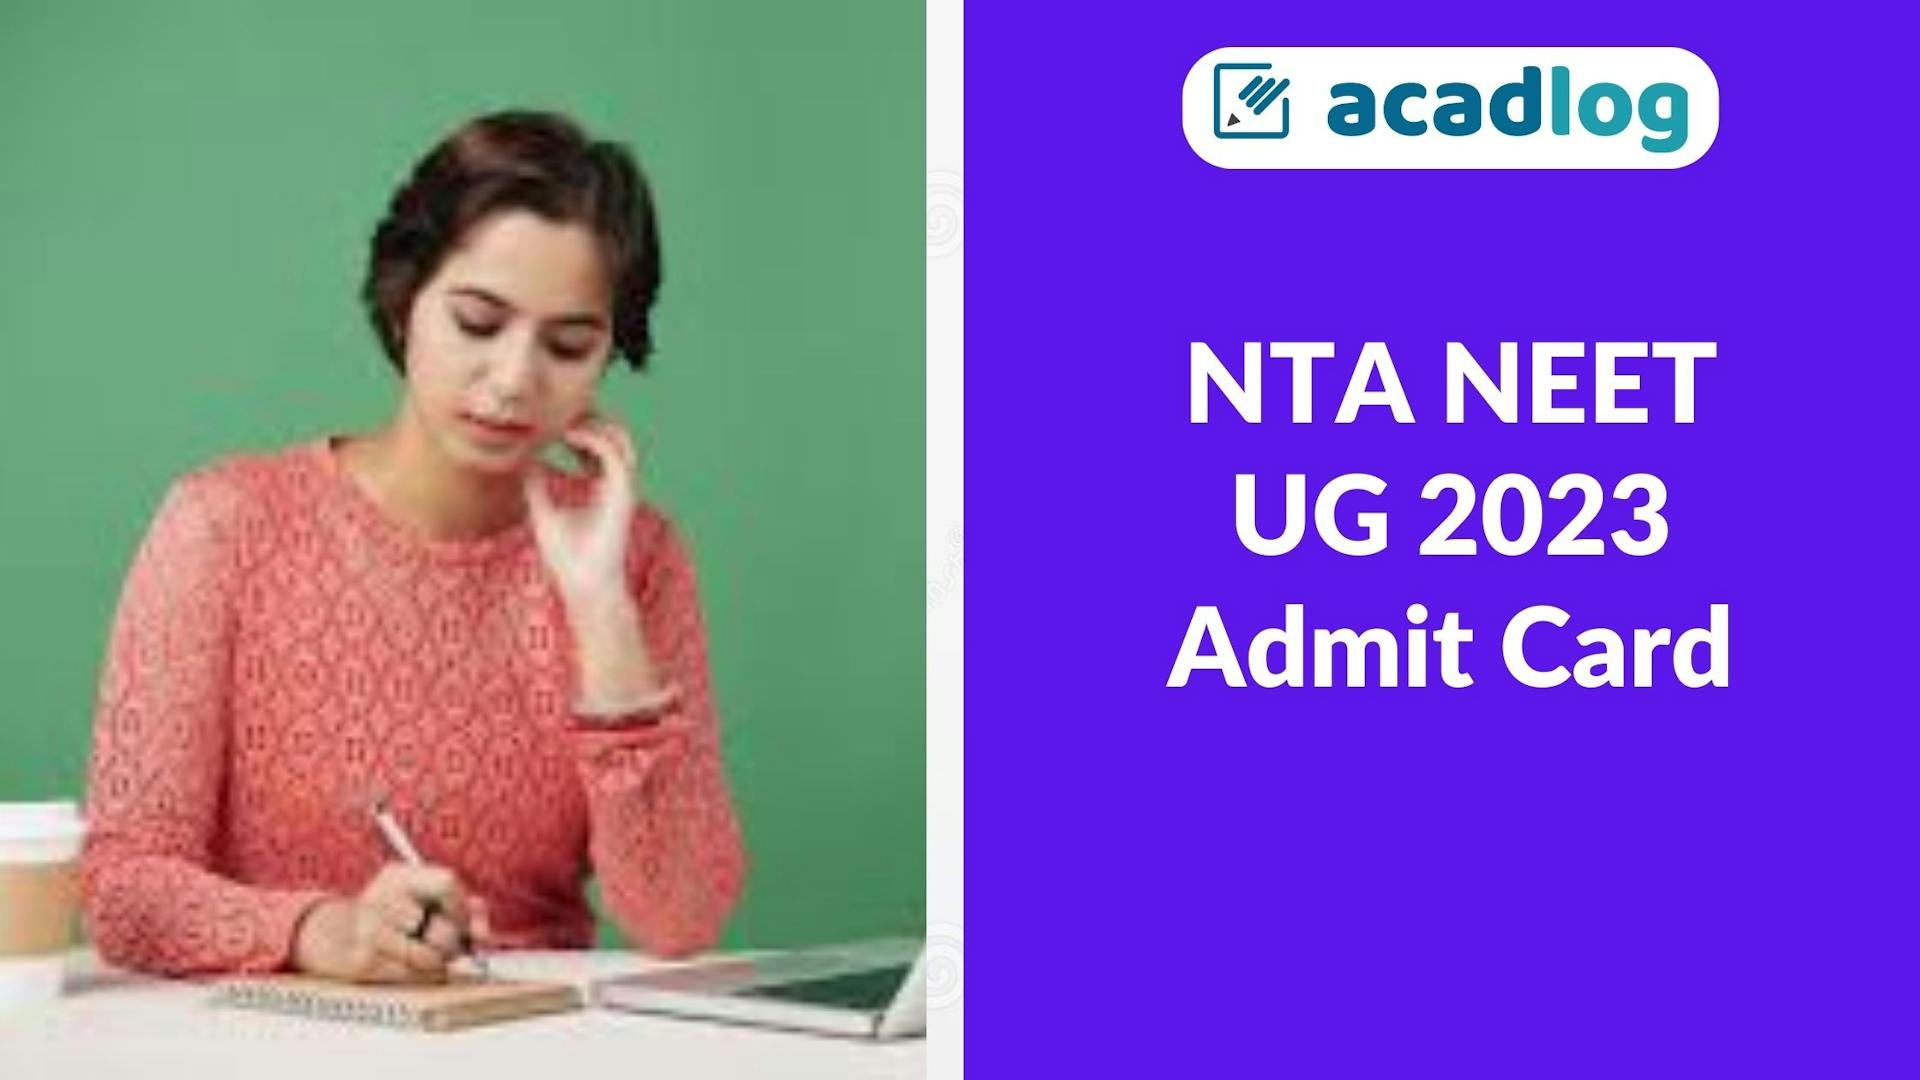 Acadlog: NTA NEET UG 2023 Advanced Intimation for Exam Date and City